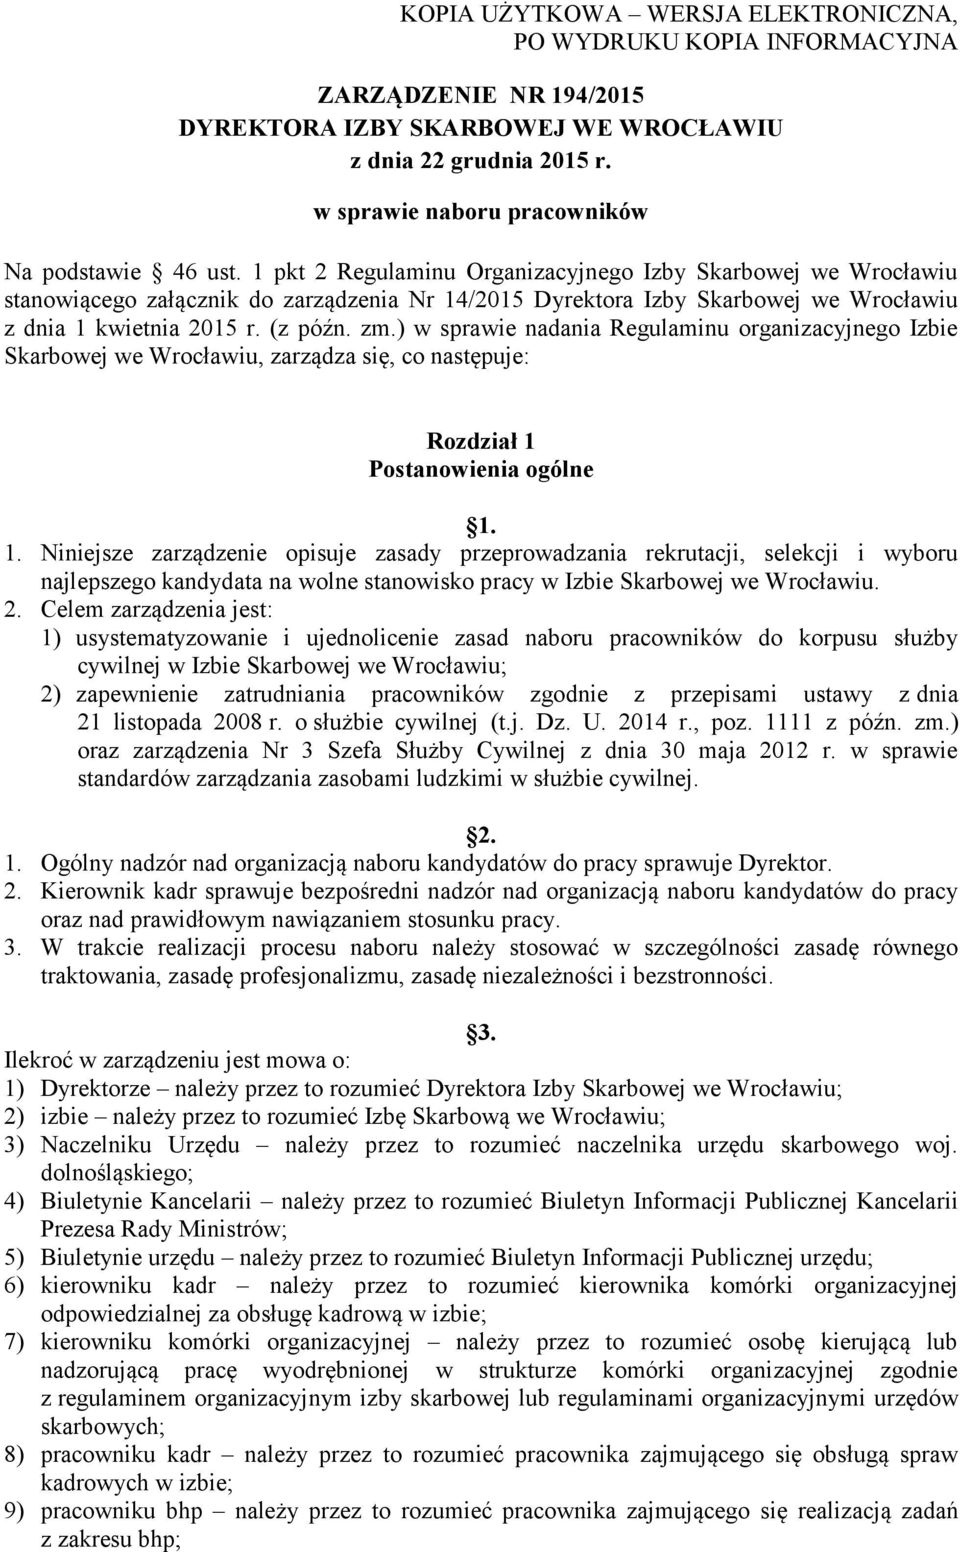 1 pkt 2 Regulaminu Organizacyjnego Izby Skarbowej we Wrocławiu stanowiącego załącznik do zarządzenia Nr 14/2015 Dyrektora Izby Skarbowej we Wrocławiu z dnia 1 kwietnia 2015 r. (z późn. zm.